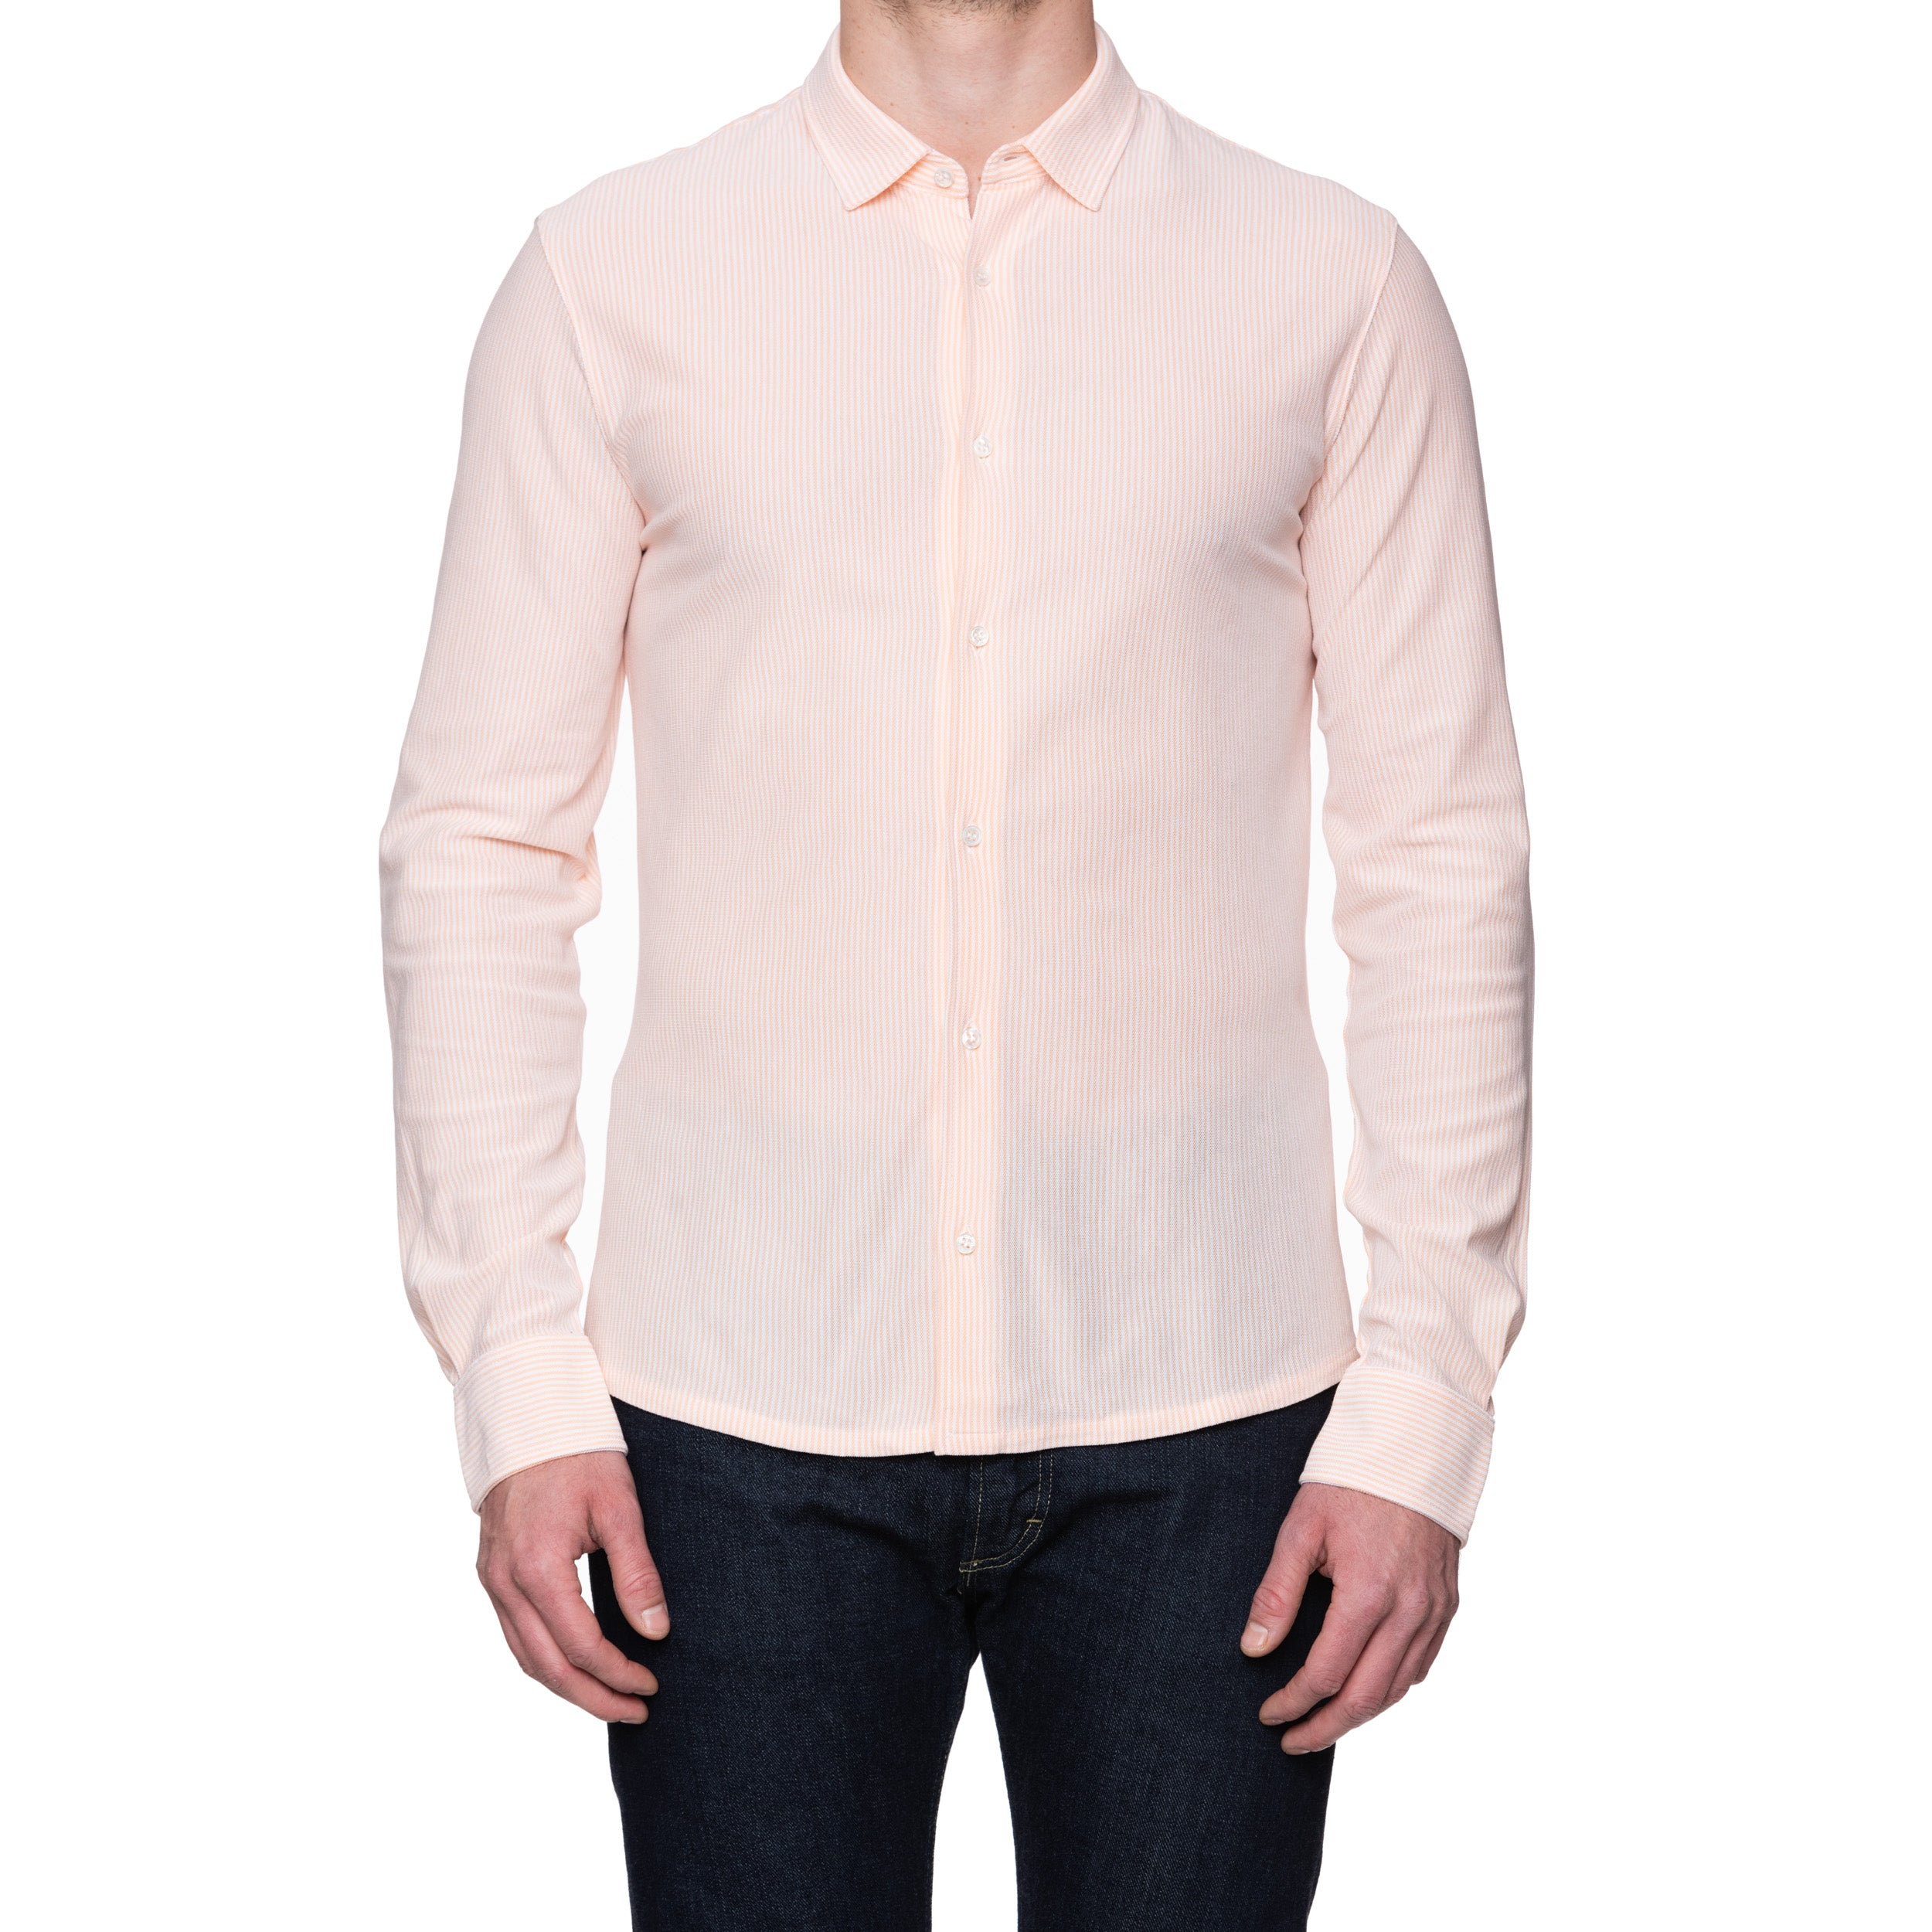 FEDELI "Kaos" Orange Striped Cotton Light Oxford Pique Polo Shirt 54 NEW XL Slim